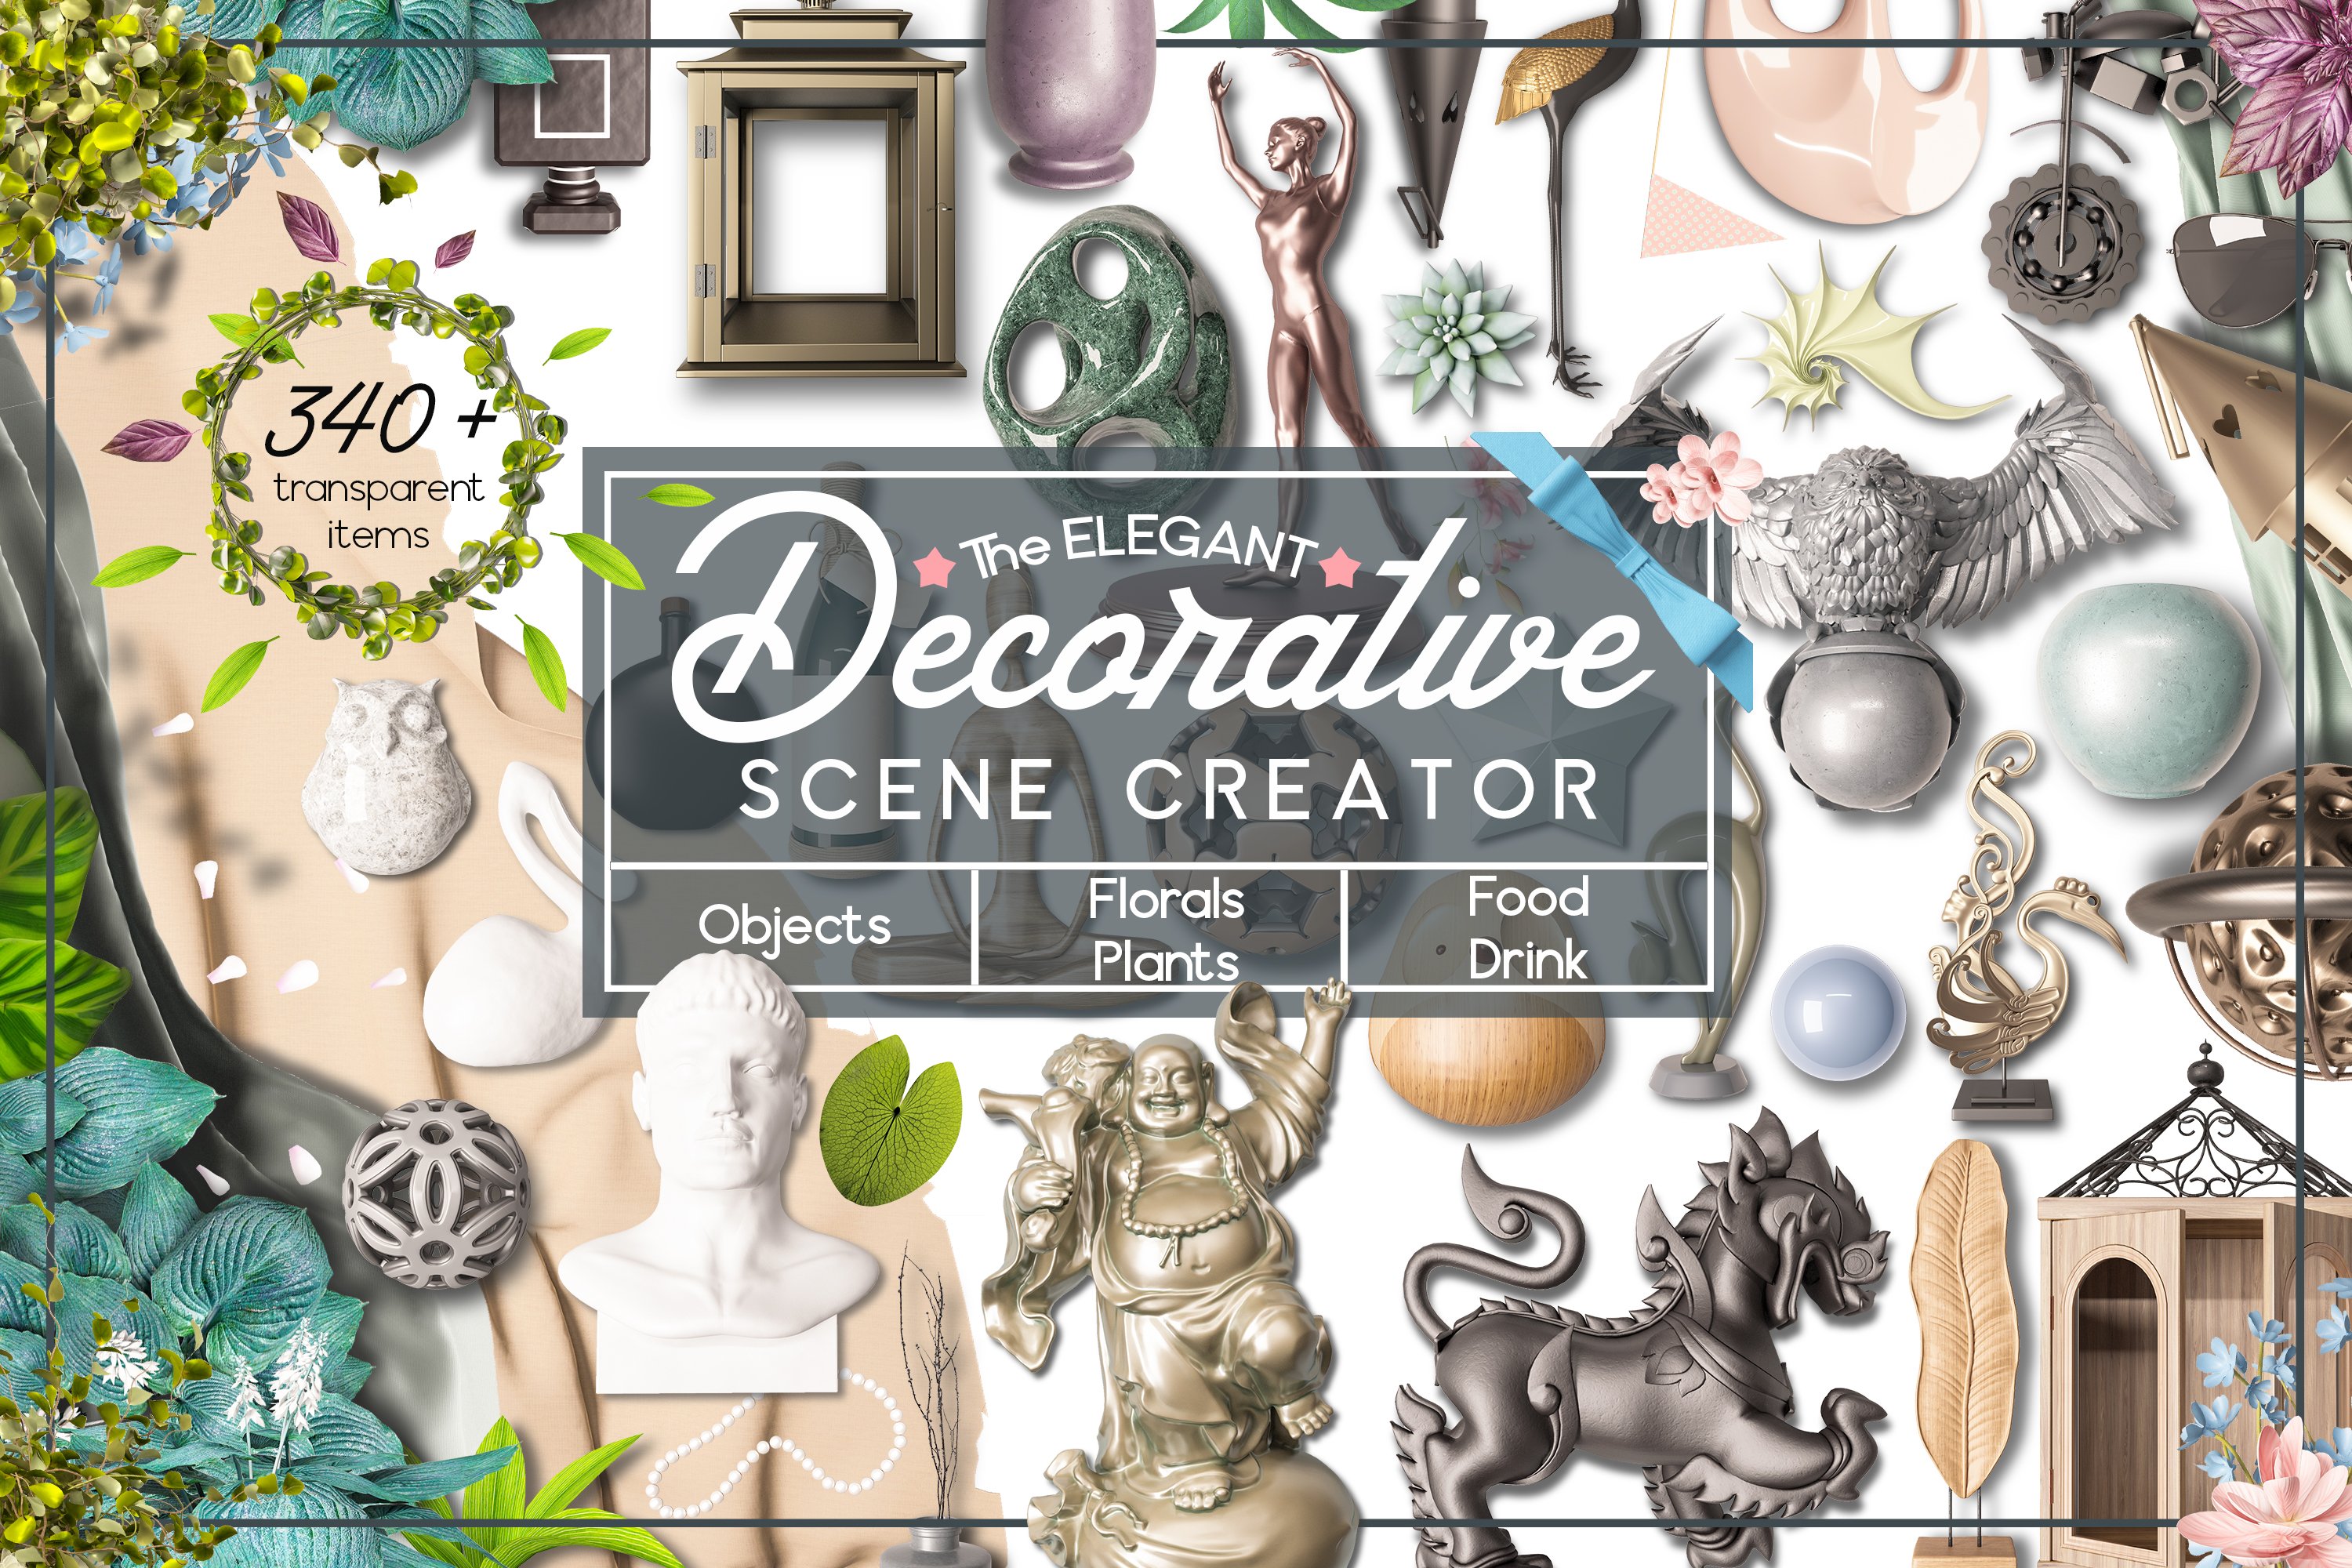 Decorative Scene Creator cover image.